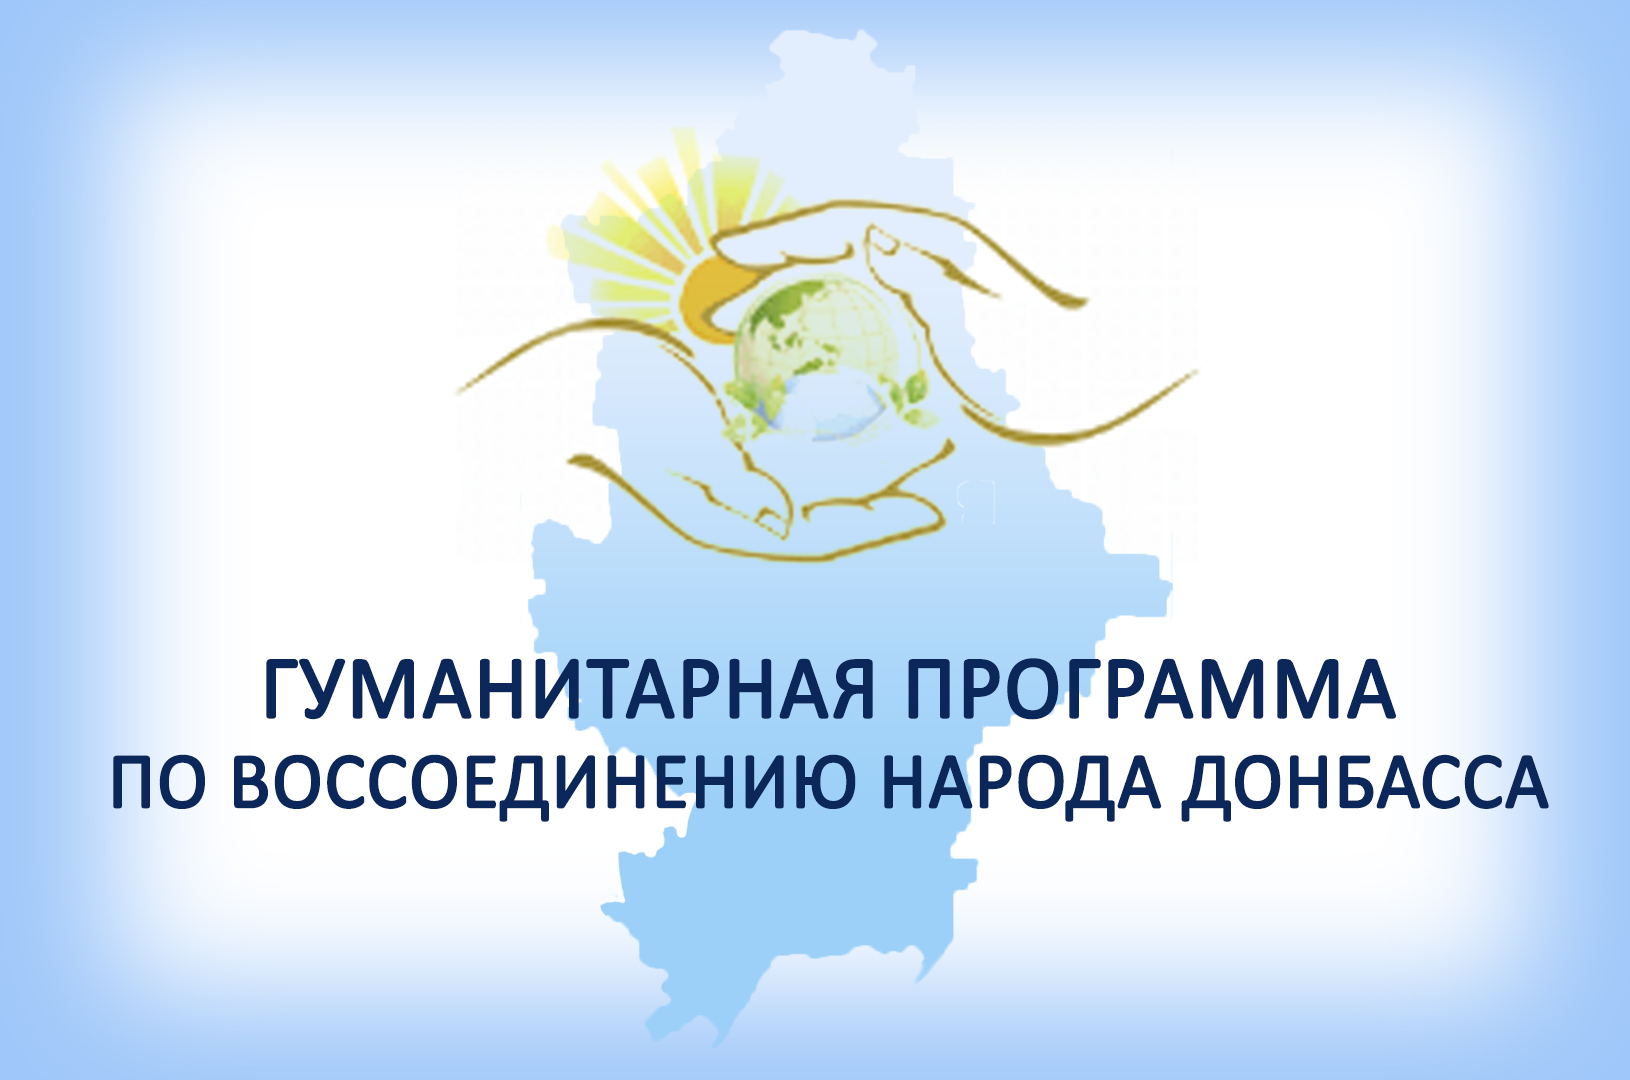 В Республике состоялись спортивные мероприятия с участием жителей подконтрольных Украине городов Донбасса